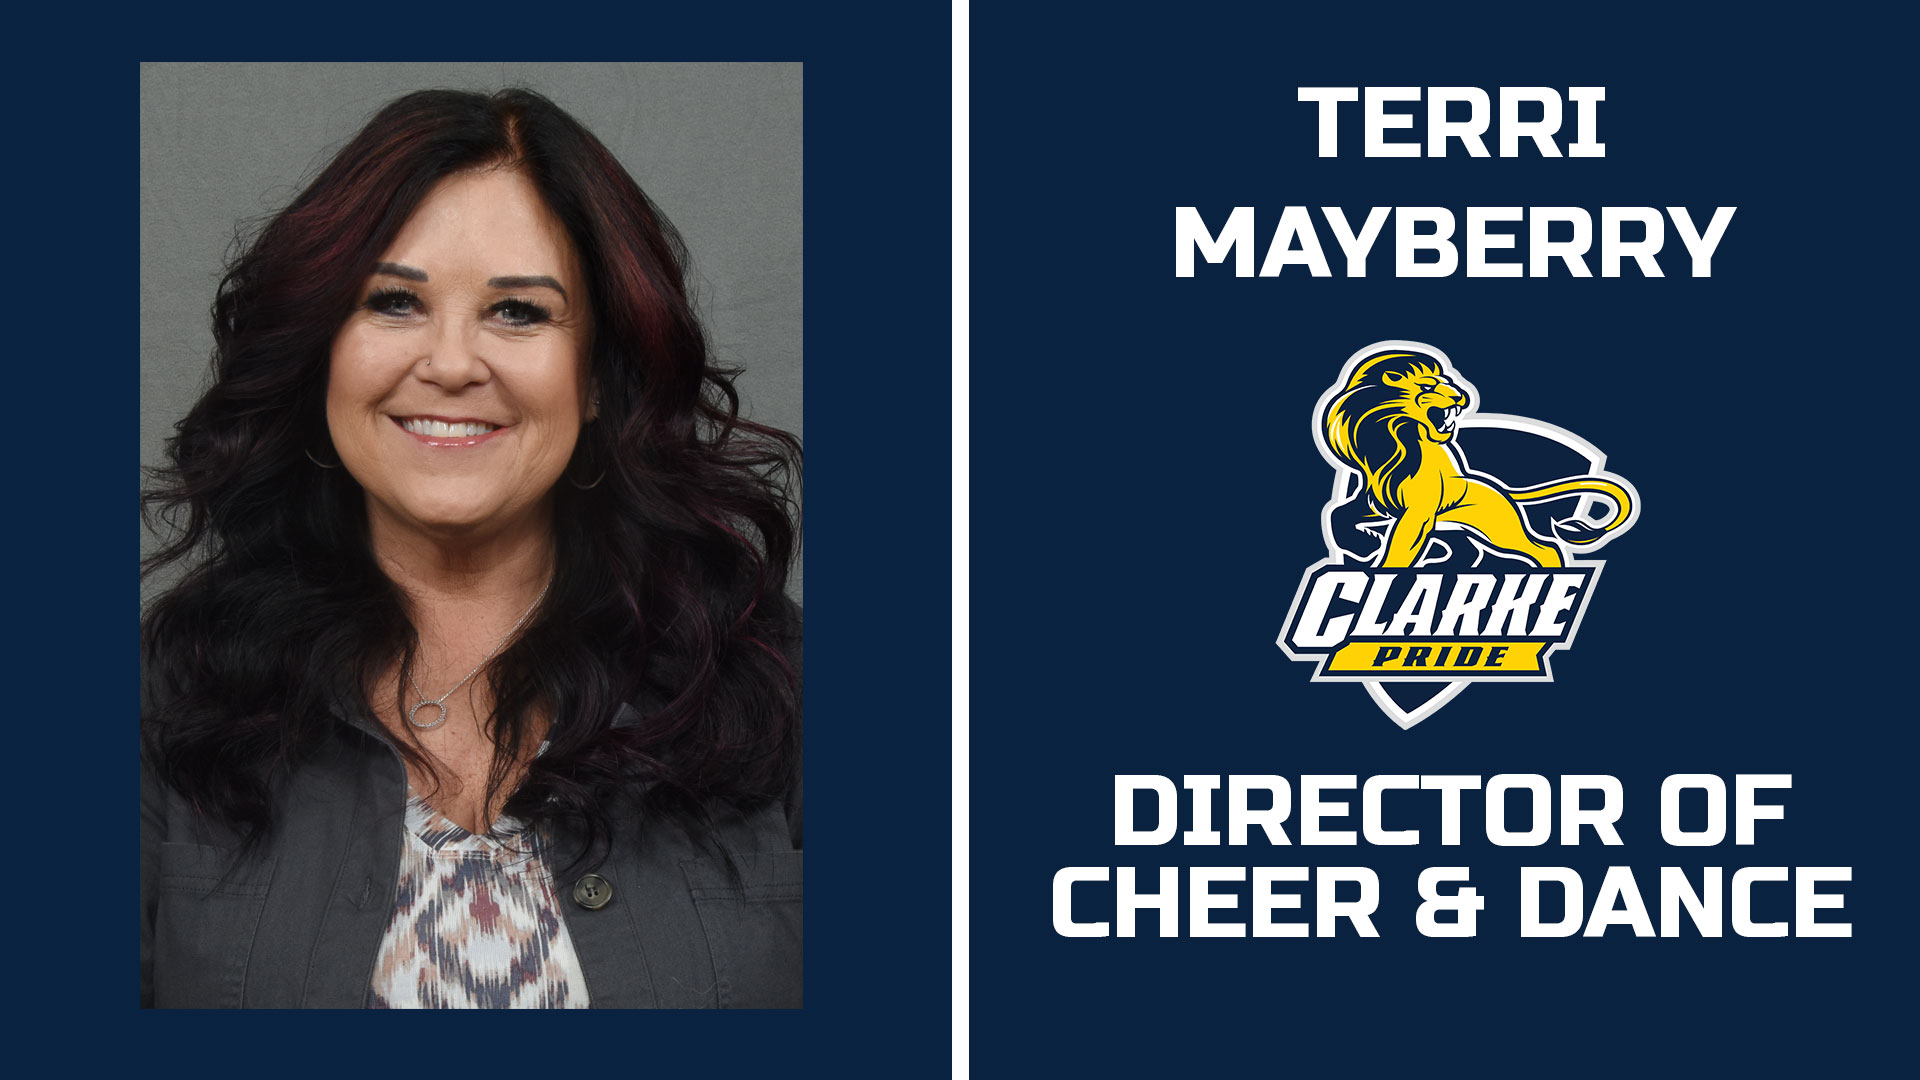 Terri Mayberry
Director of Cheer & Dance